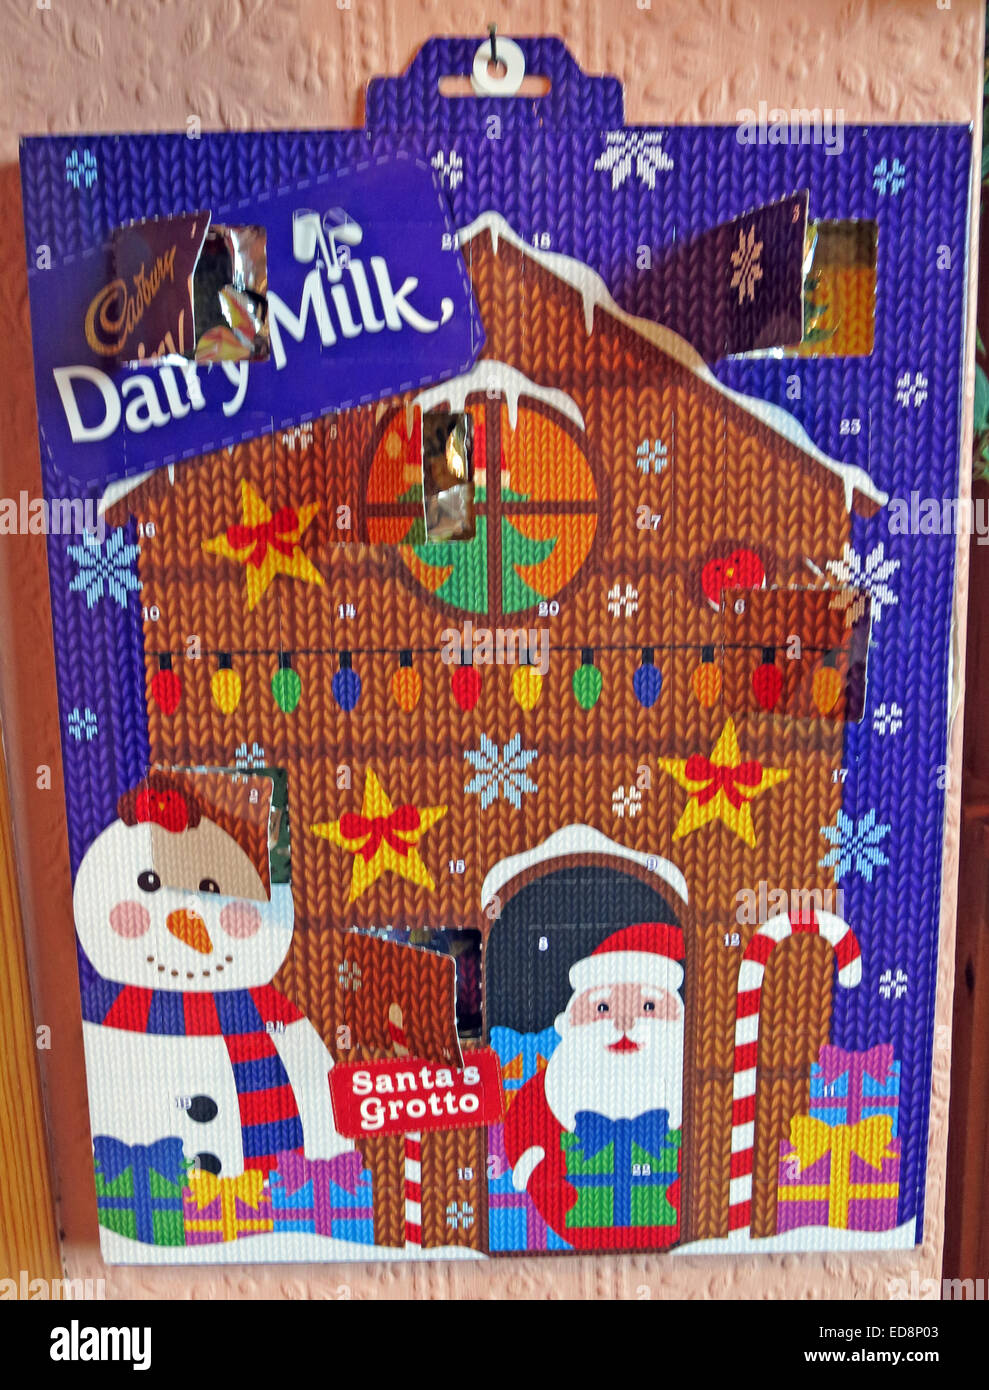 Cadbury Dairy Milk Chocolate Avent Calender en décembre, Noël, avec une fenêtre ouverte Banque D'Images